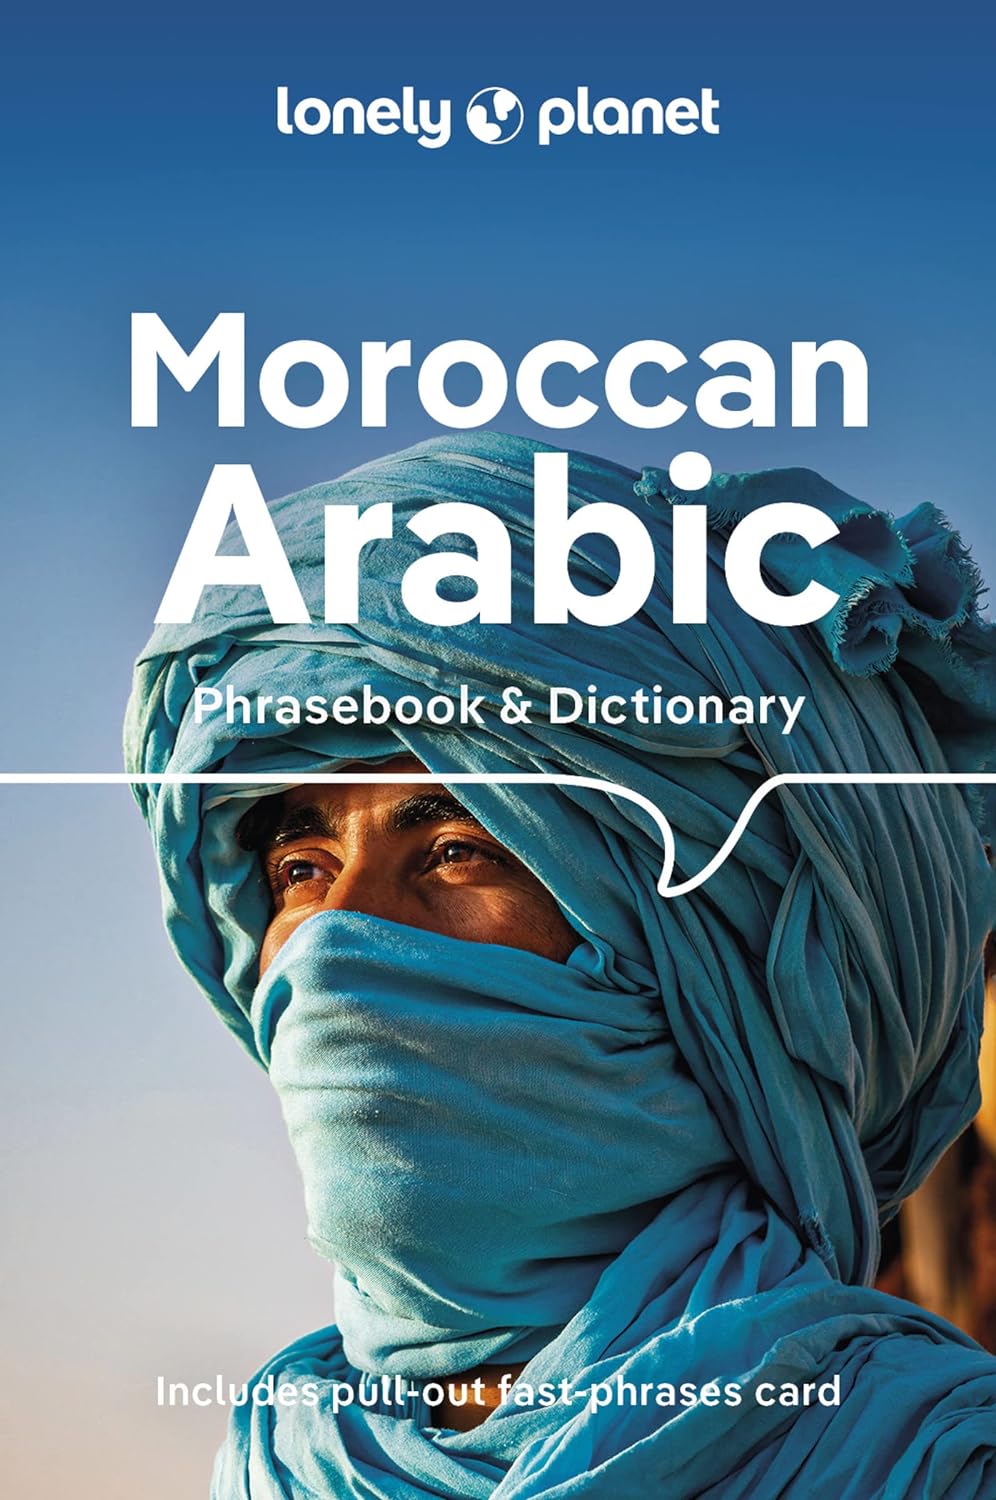 Online bestellen: Woordenboek Phrasebook & Dictionary Moroccan Arabic - Marokkaans | Lonely Planet